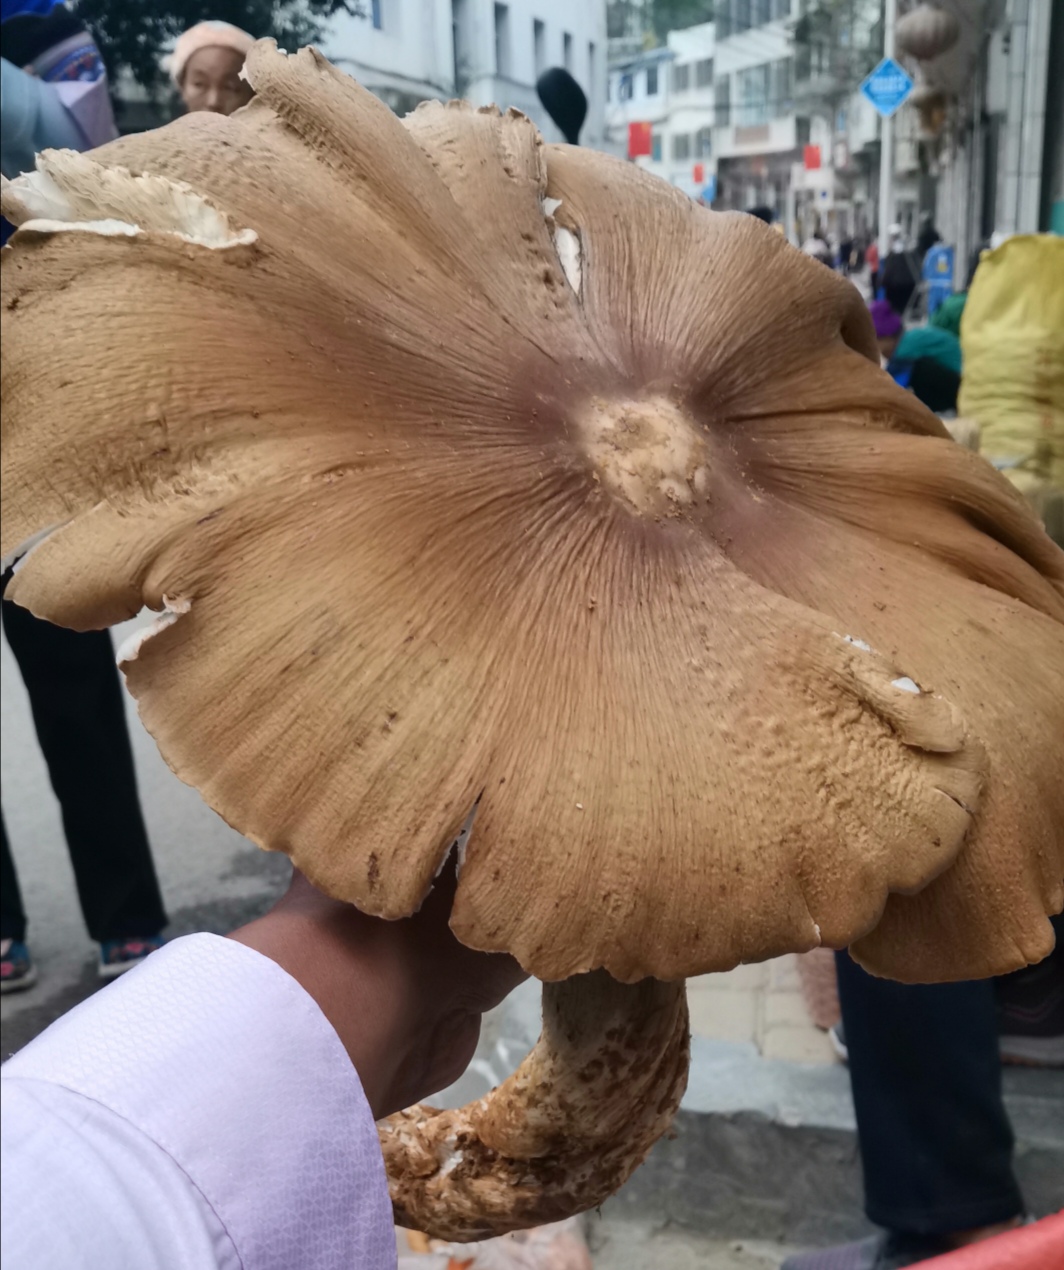 贵州一乡镇惊现巨型鸡枞菌,单朵重量达到2斤